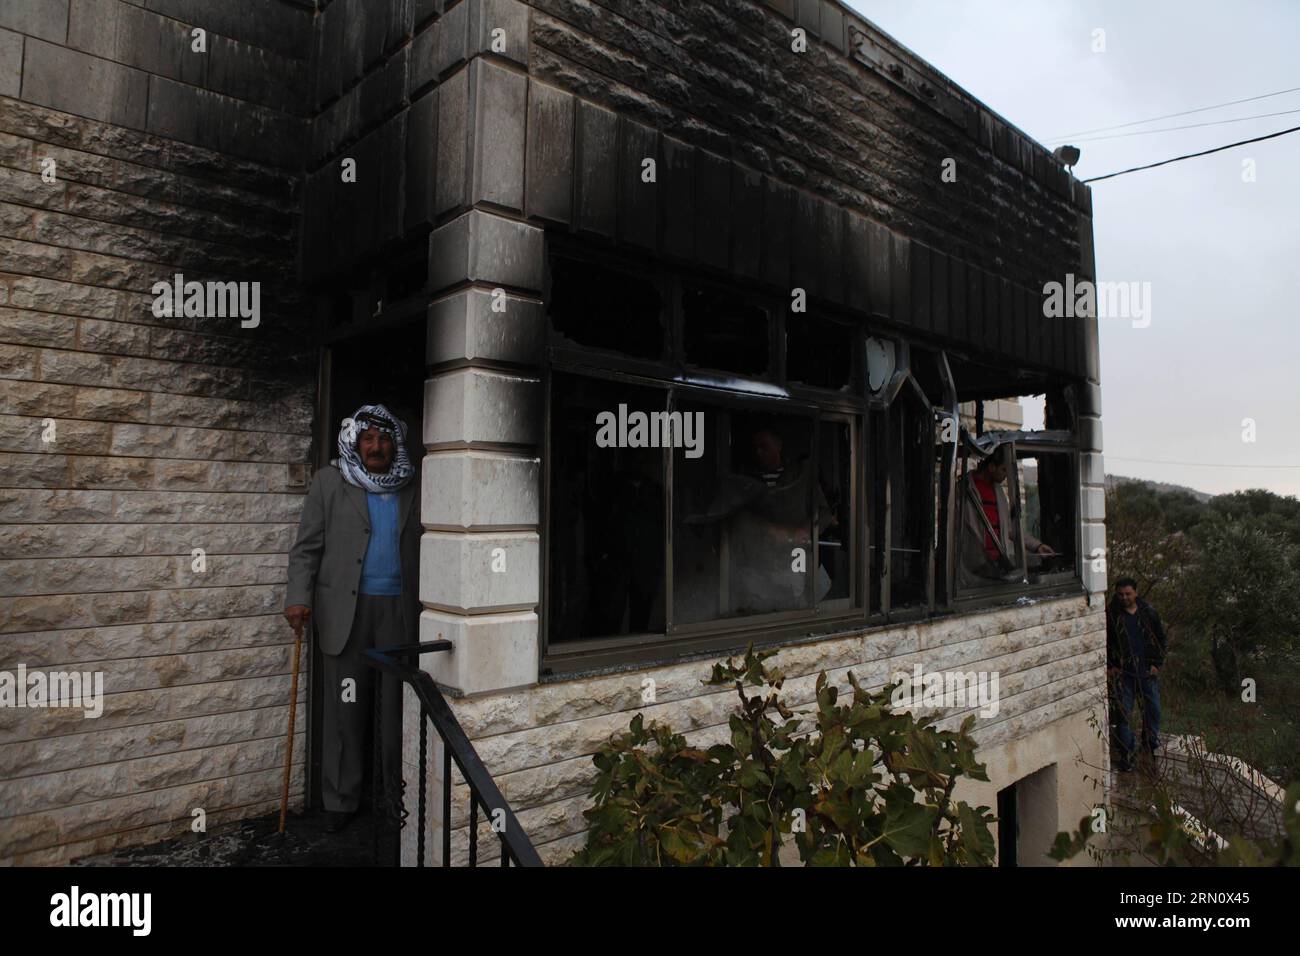 I palestinesi sono visti di fronte alla casa che è stata attaccata da bombe a benzina nel villaggio di Khirbat Abu Falah, a nord-est di Ramallah, il 23 novembre 2014. I coloni ebrei presumibilmente incendiano una casa di famiglia palestinese nella Cisgiordania occupata durante la notte, in un sospetto crimine d'odio in mezzo alla tensione crescente tra israeliani e palestinesi. Fadi Arouri) MIDEAST-RAMALLAH-INCENDIATO CASA EmadxDrimly PUBLICATIONxNOTxINxCHN PALESTINA sono laghi di fronte alla casa che ciò che ha attaccato dalle bombe a benzina nel villaggio di Abu Falah a nord-est di Ramallah IL 23 novembre 2014 i coloni ebrei presumibilmente hanno incastrato Abla Foto Stock